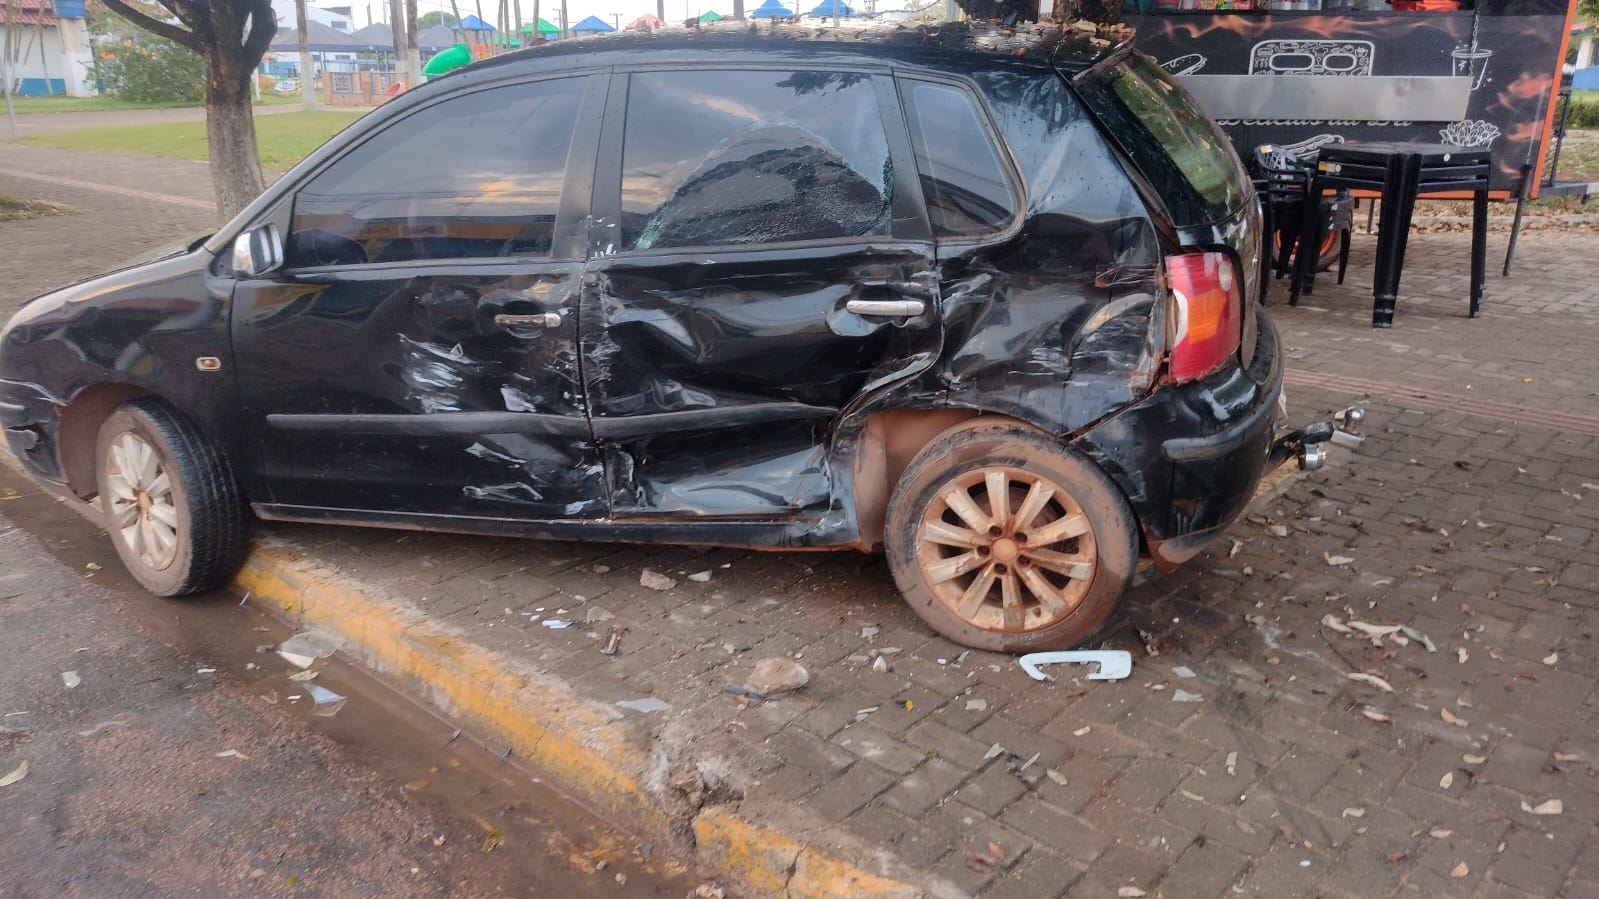 Motorista em alta velocidade perde o controle do veículo e bate violentamente contra o veículo de vendedora de lanches em Guarantã do Norte.